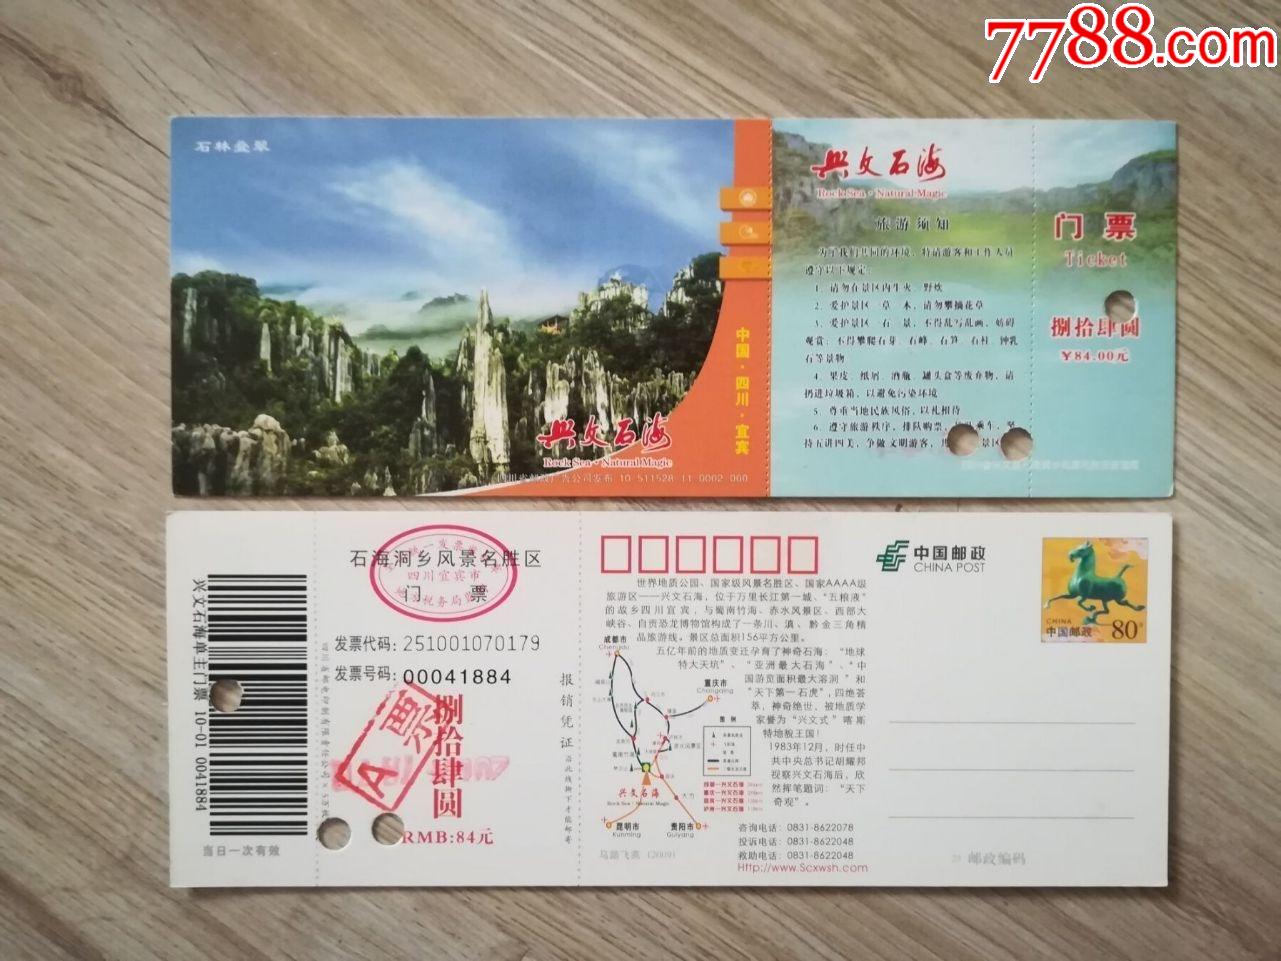 兴文石海-价格:2.0000元-se80682867-旅游景点门票